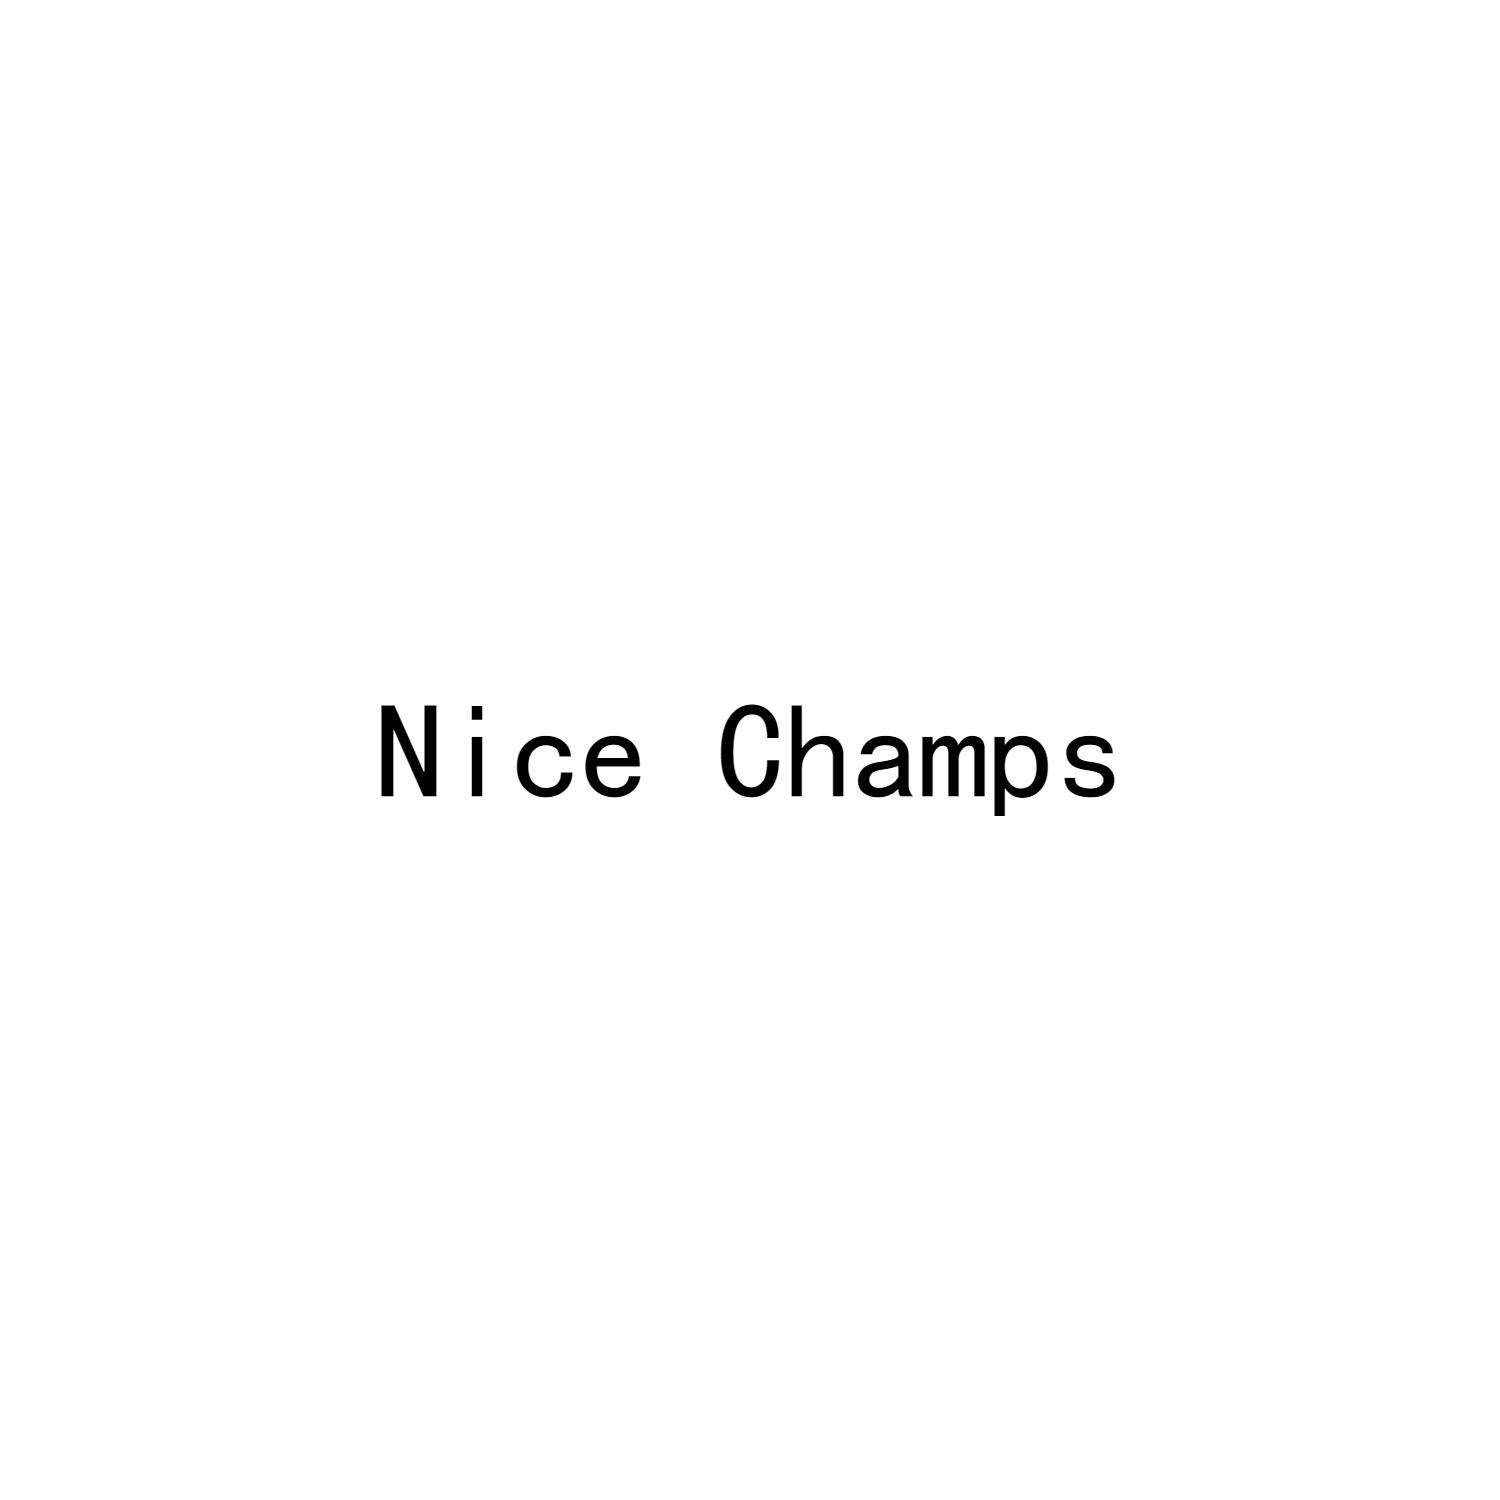 NICE CHAMPS